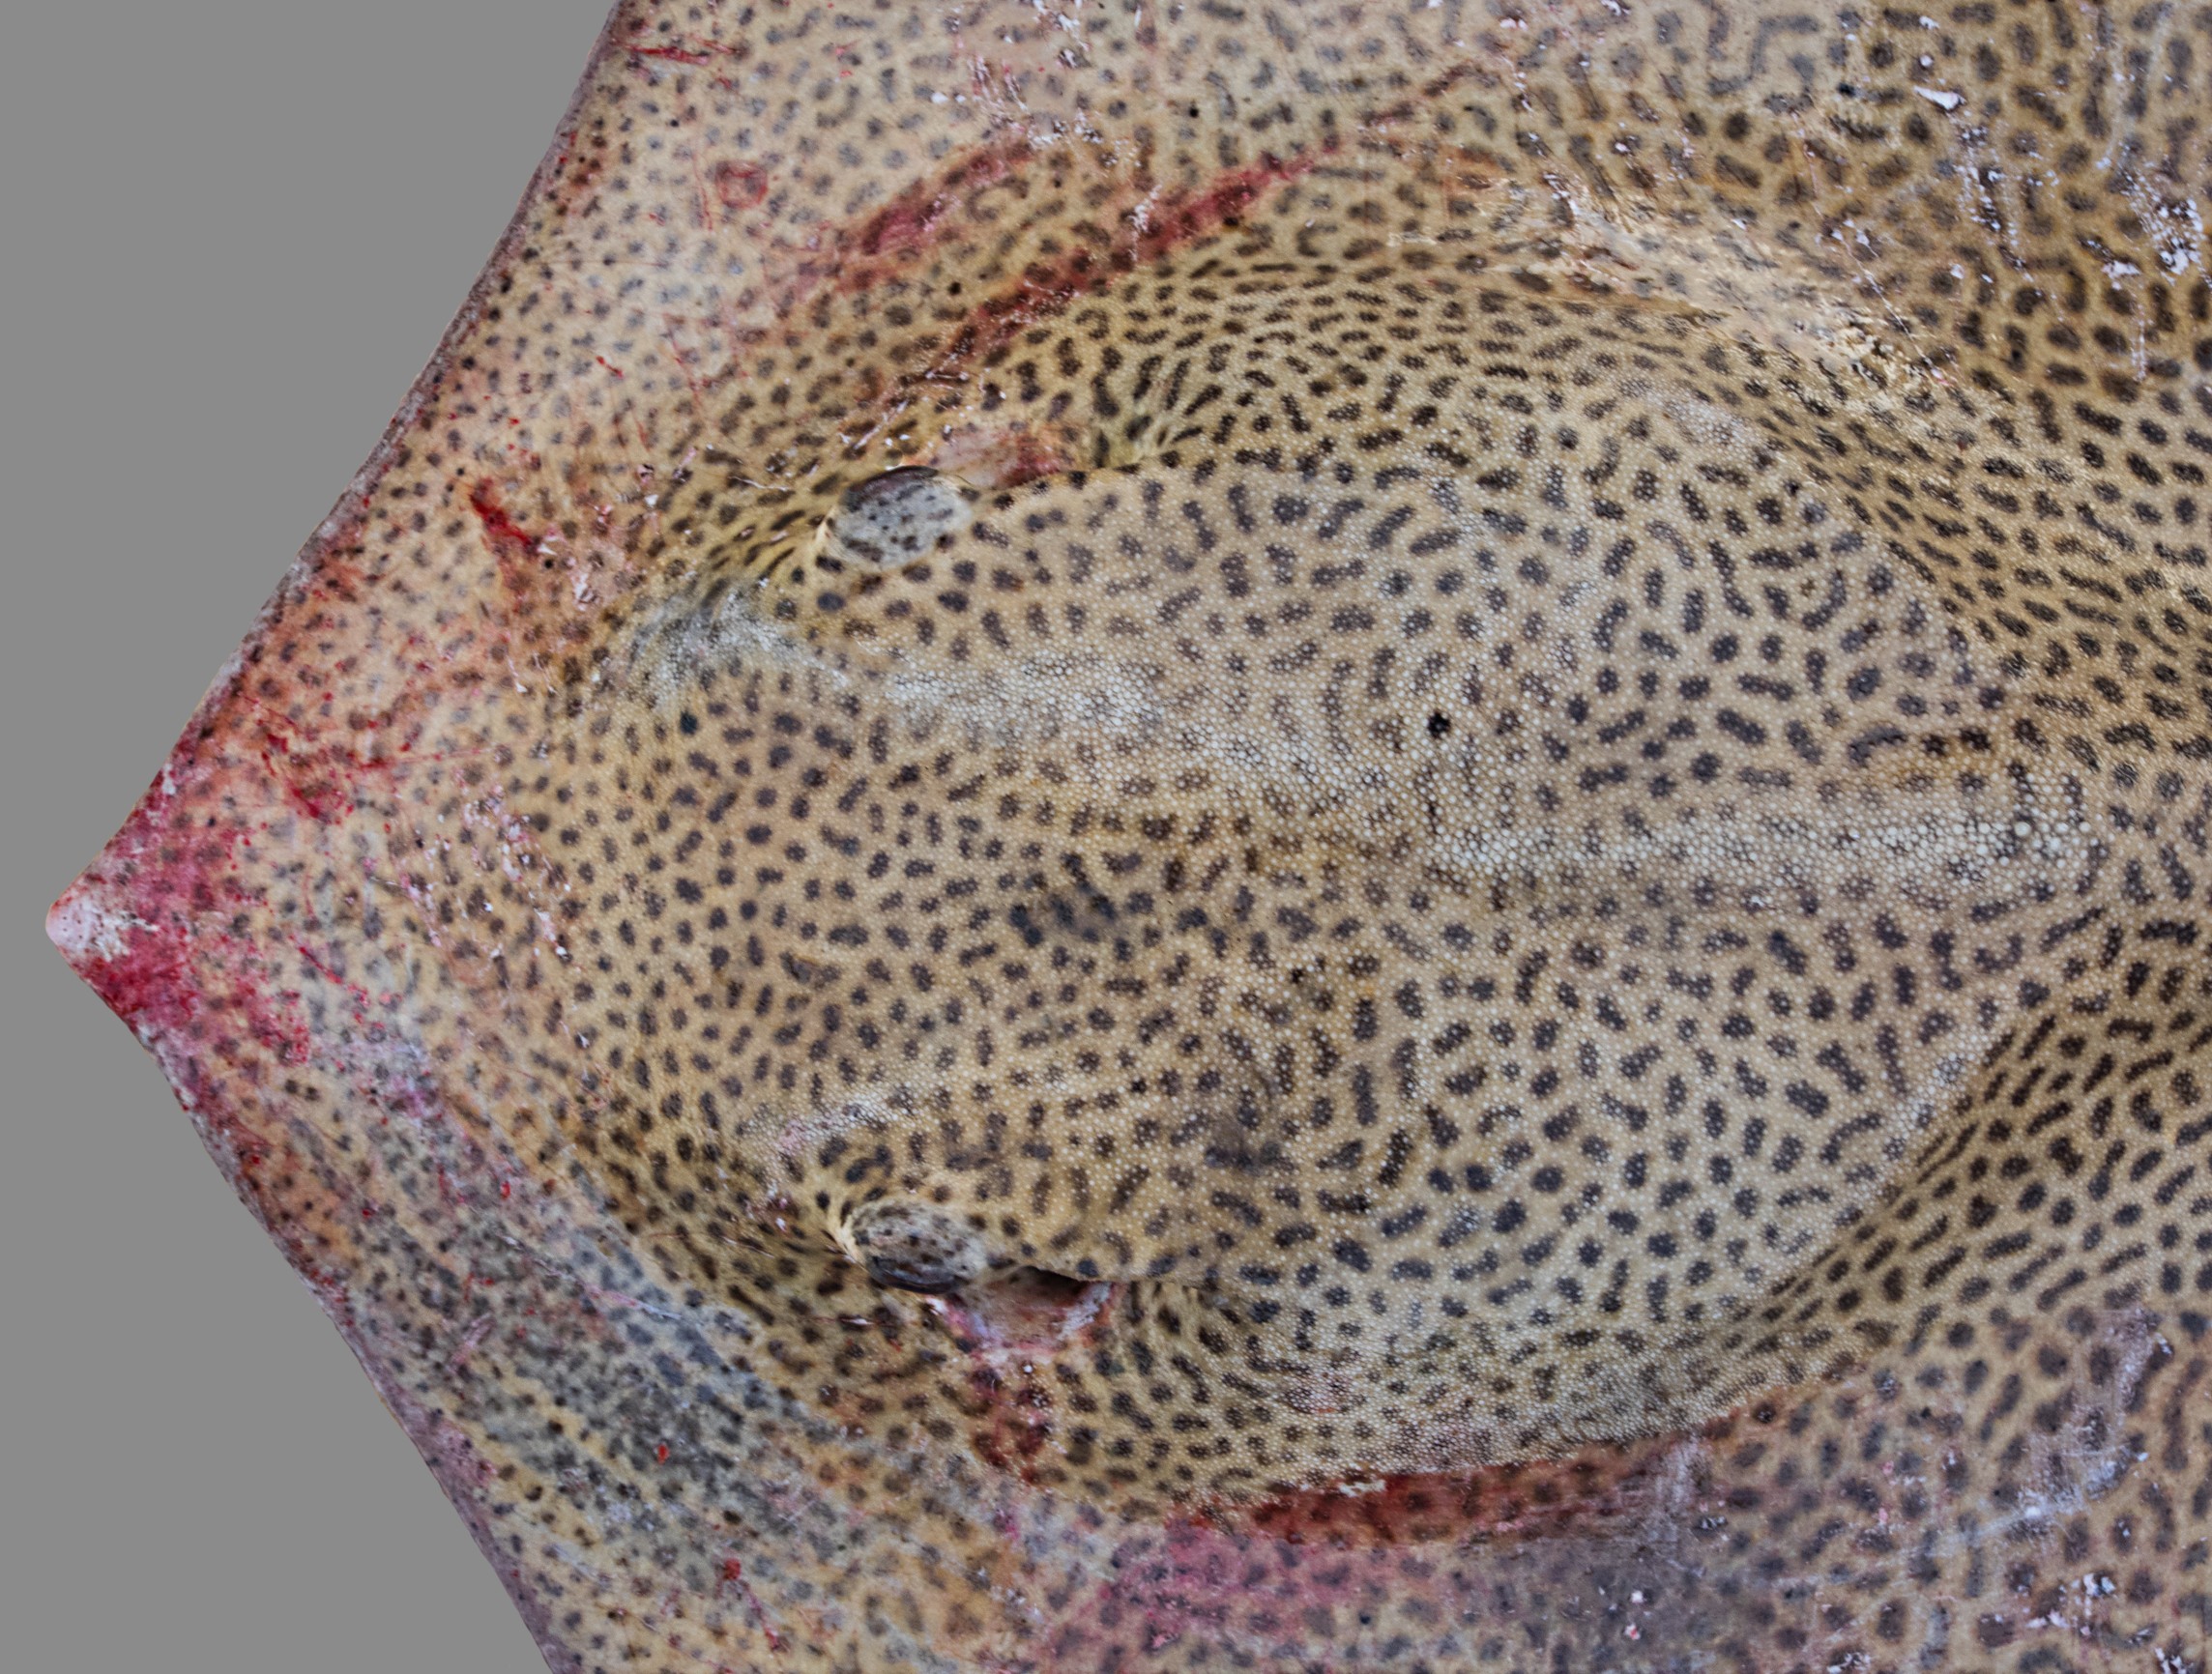 Himantura uarnak, male, 112 cm DW, head close-up, Saudi Arabia: Jizan; S.V. Bogorodsky